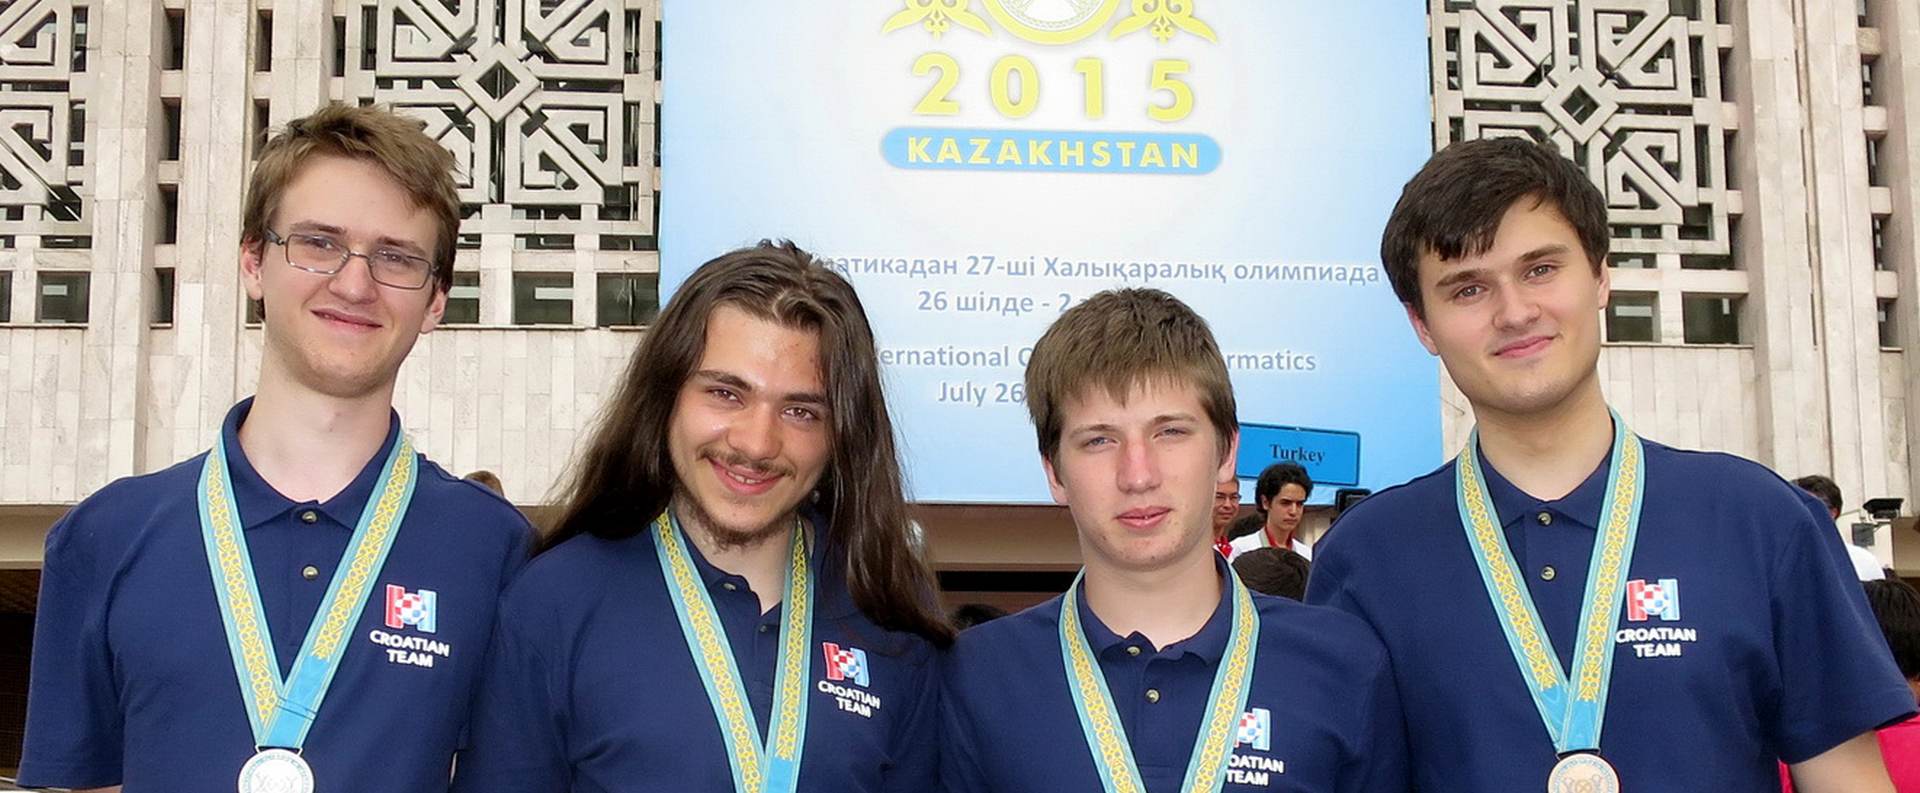 PONOS HRVATSKE:  Četiri medalje hrvatskim učenicima na svjetskoj Informatičkoj olimpijadi